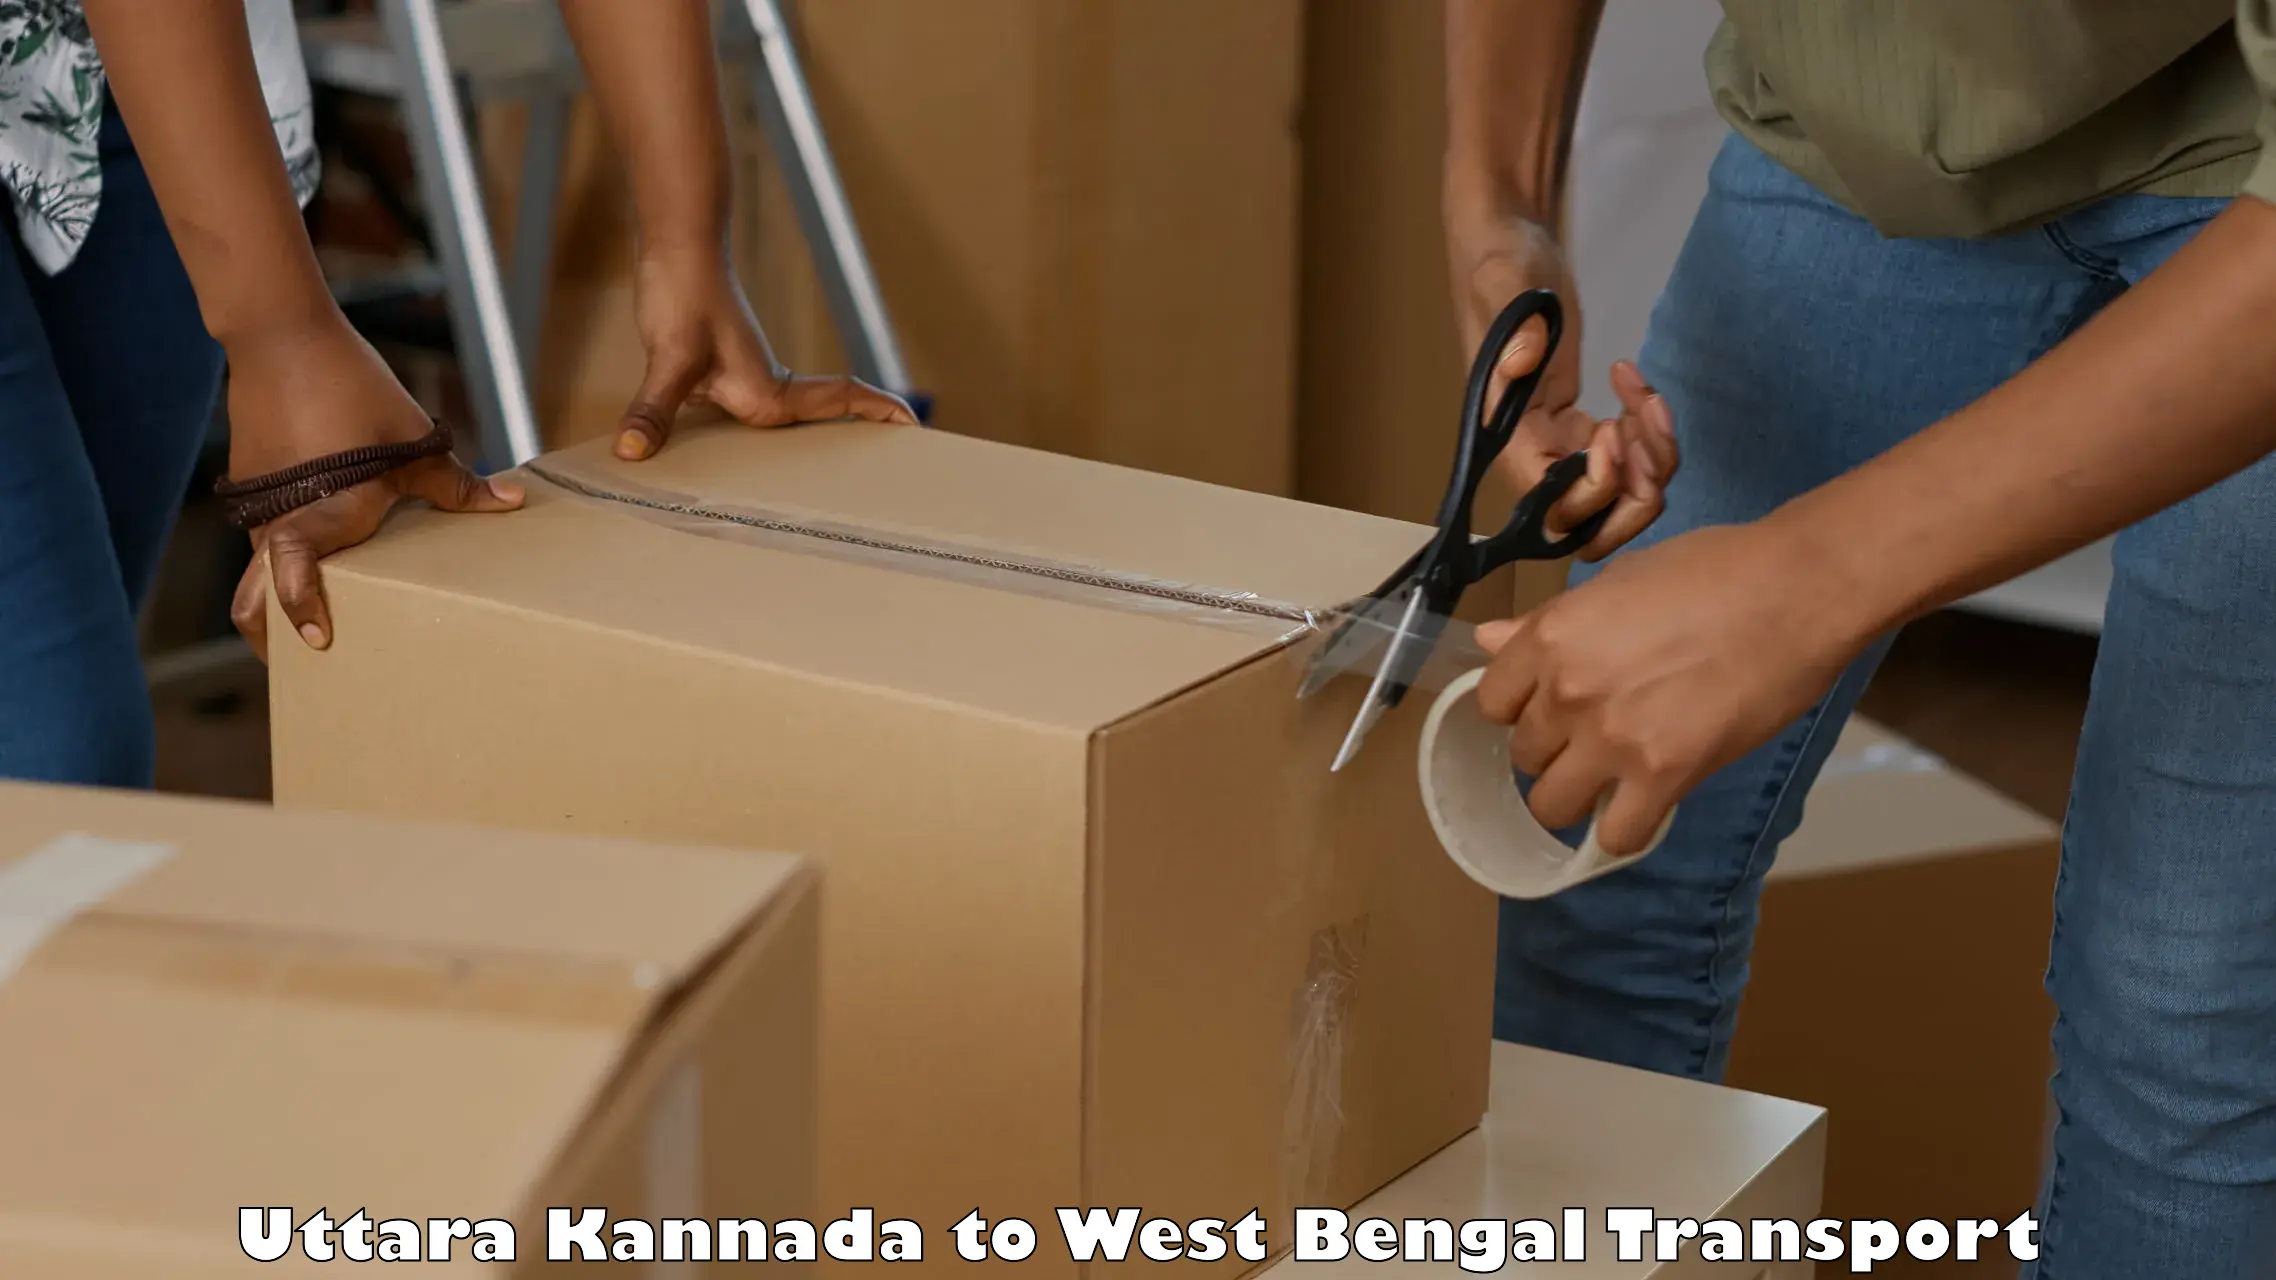 Logistics transportation services Uttara Kannada to Bankura